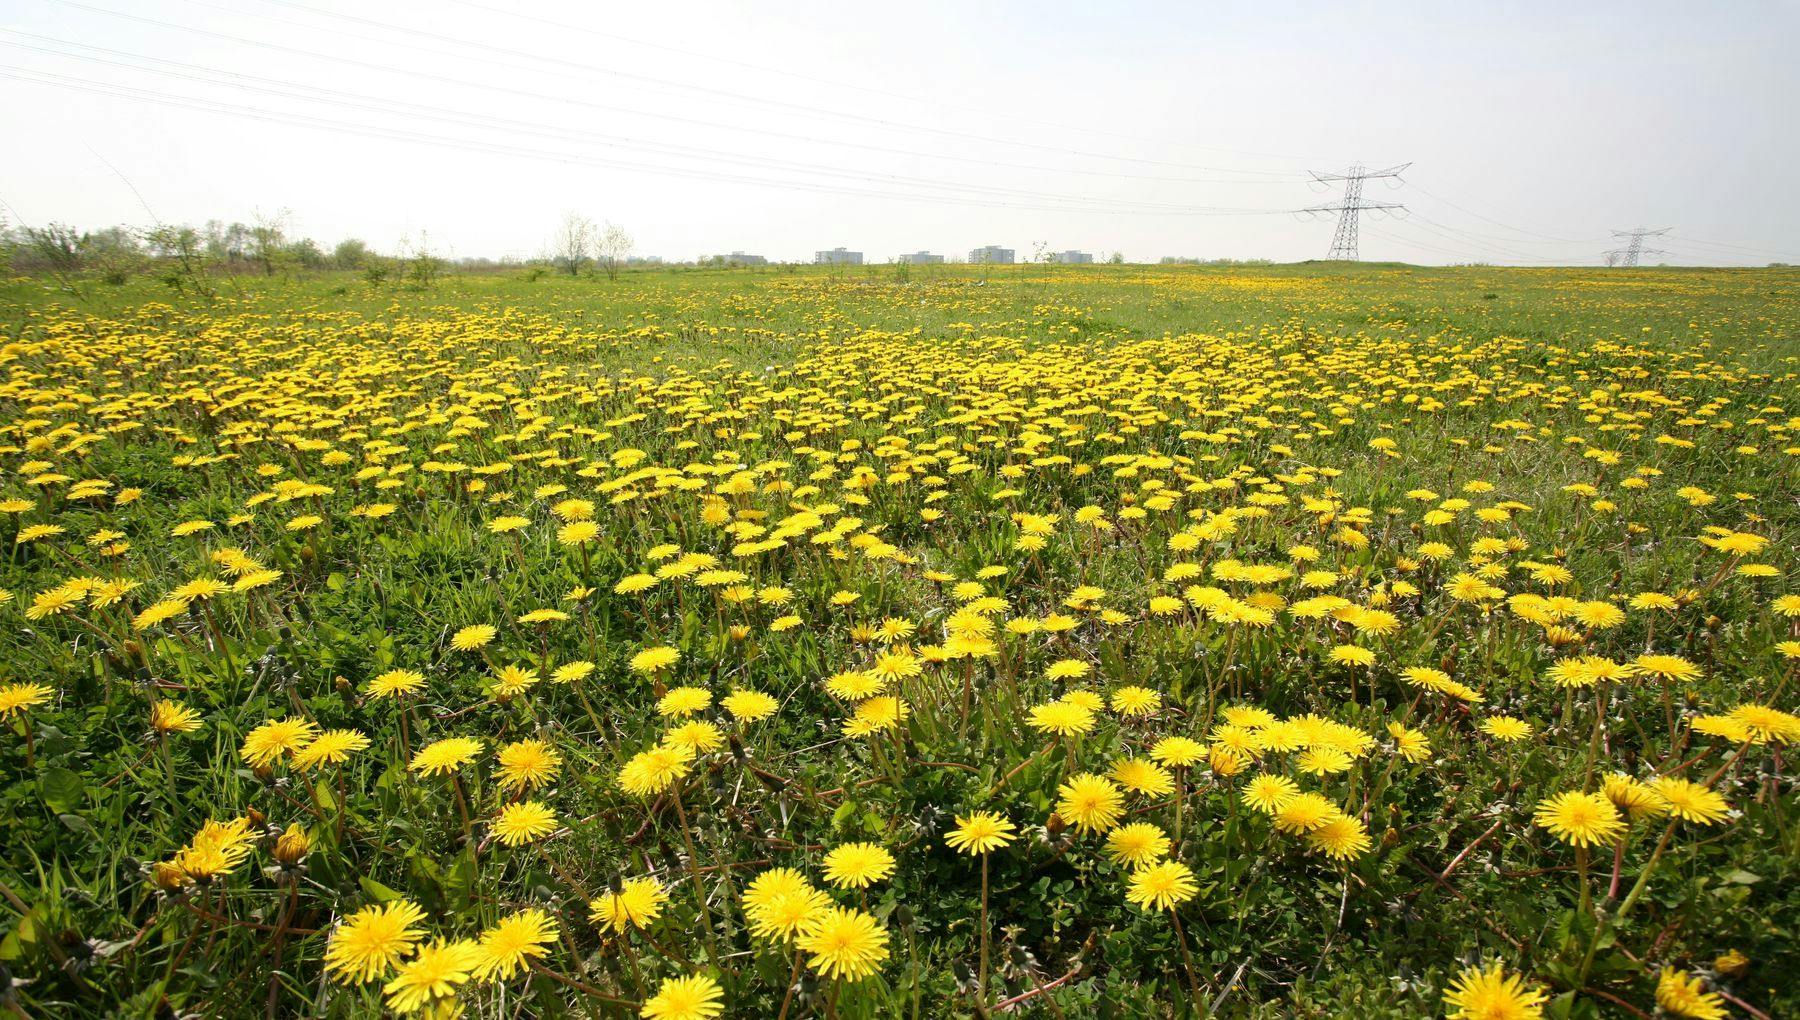 A field of dandelions in Diemerpark